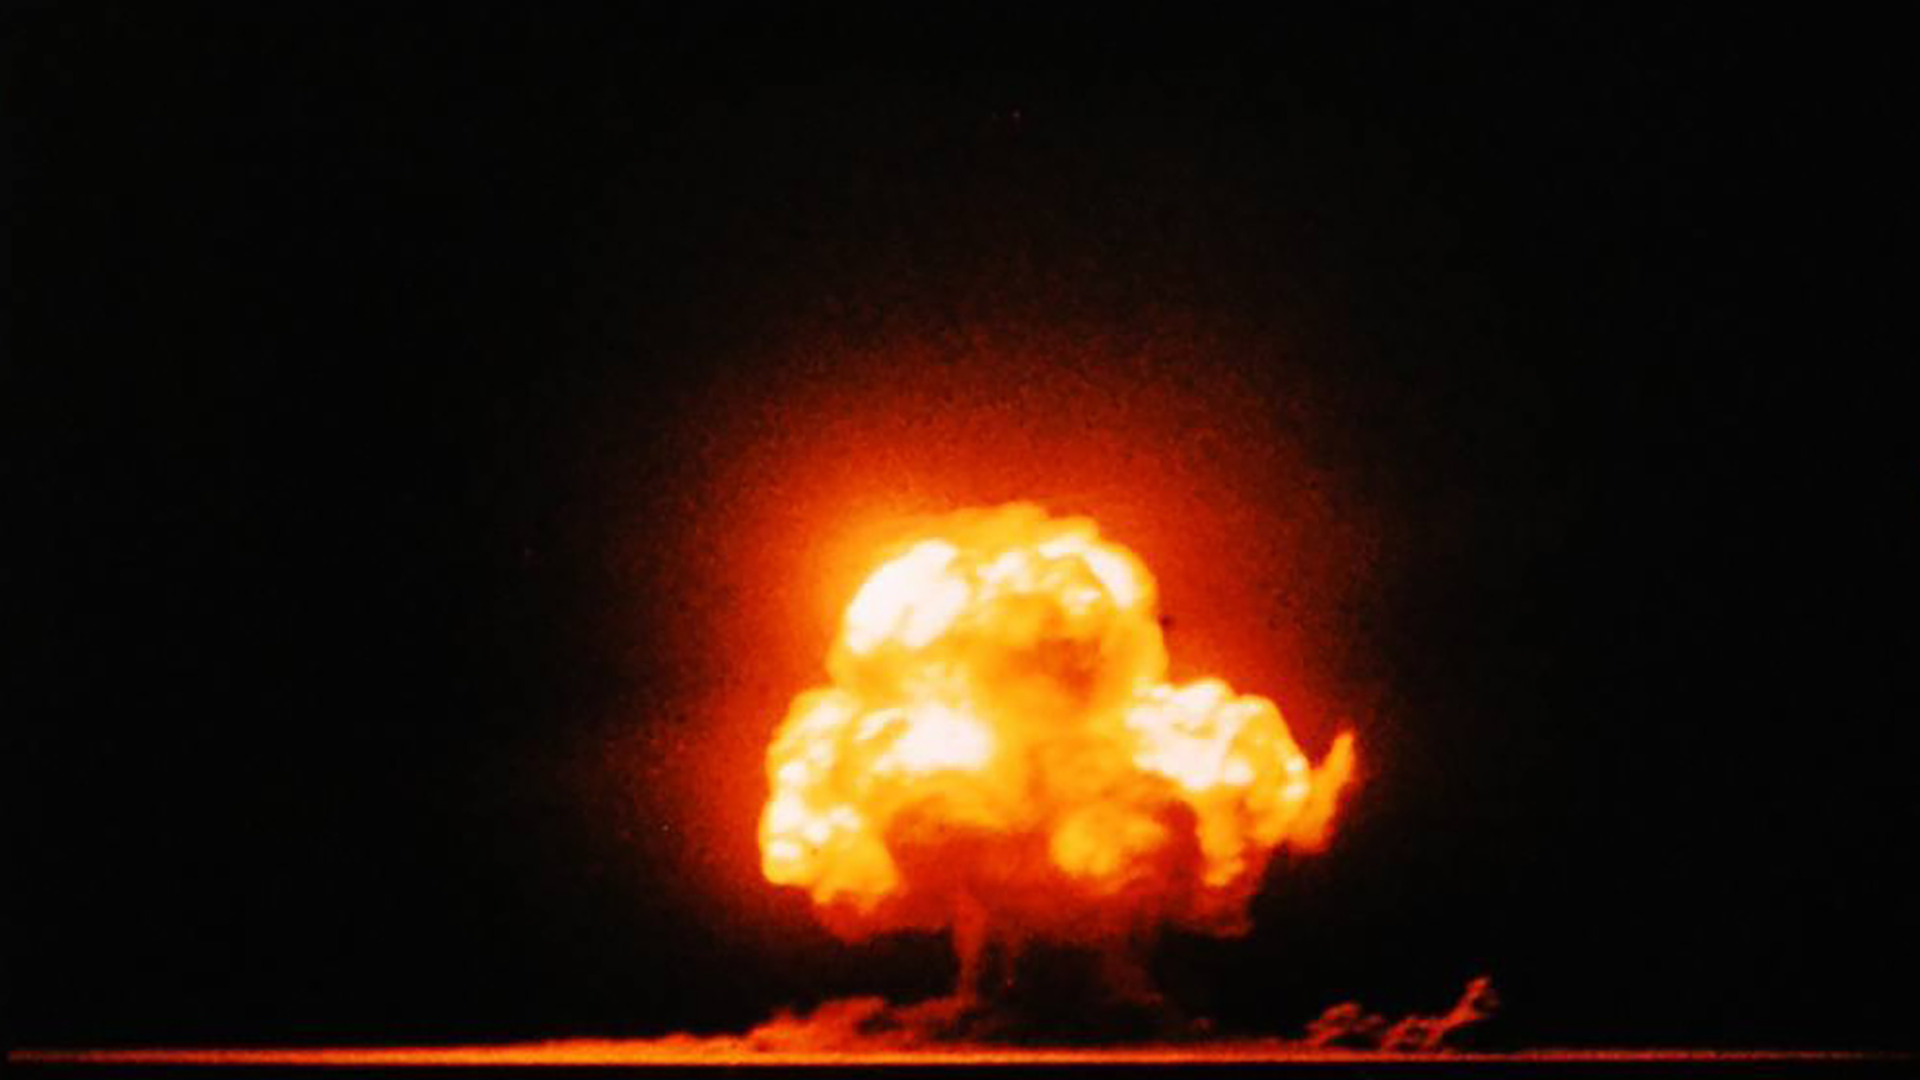  První jaderná exploze v historii. - Zdroj: https://www.nationalww2museum.org/